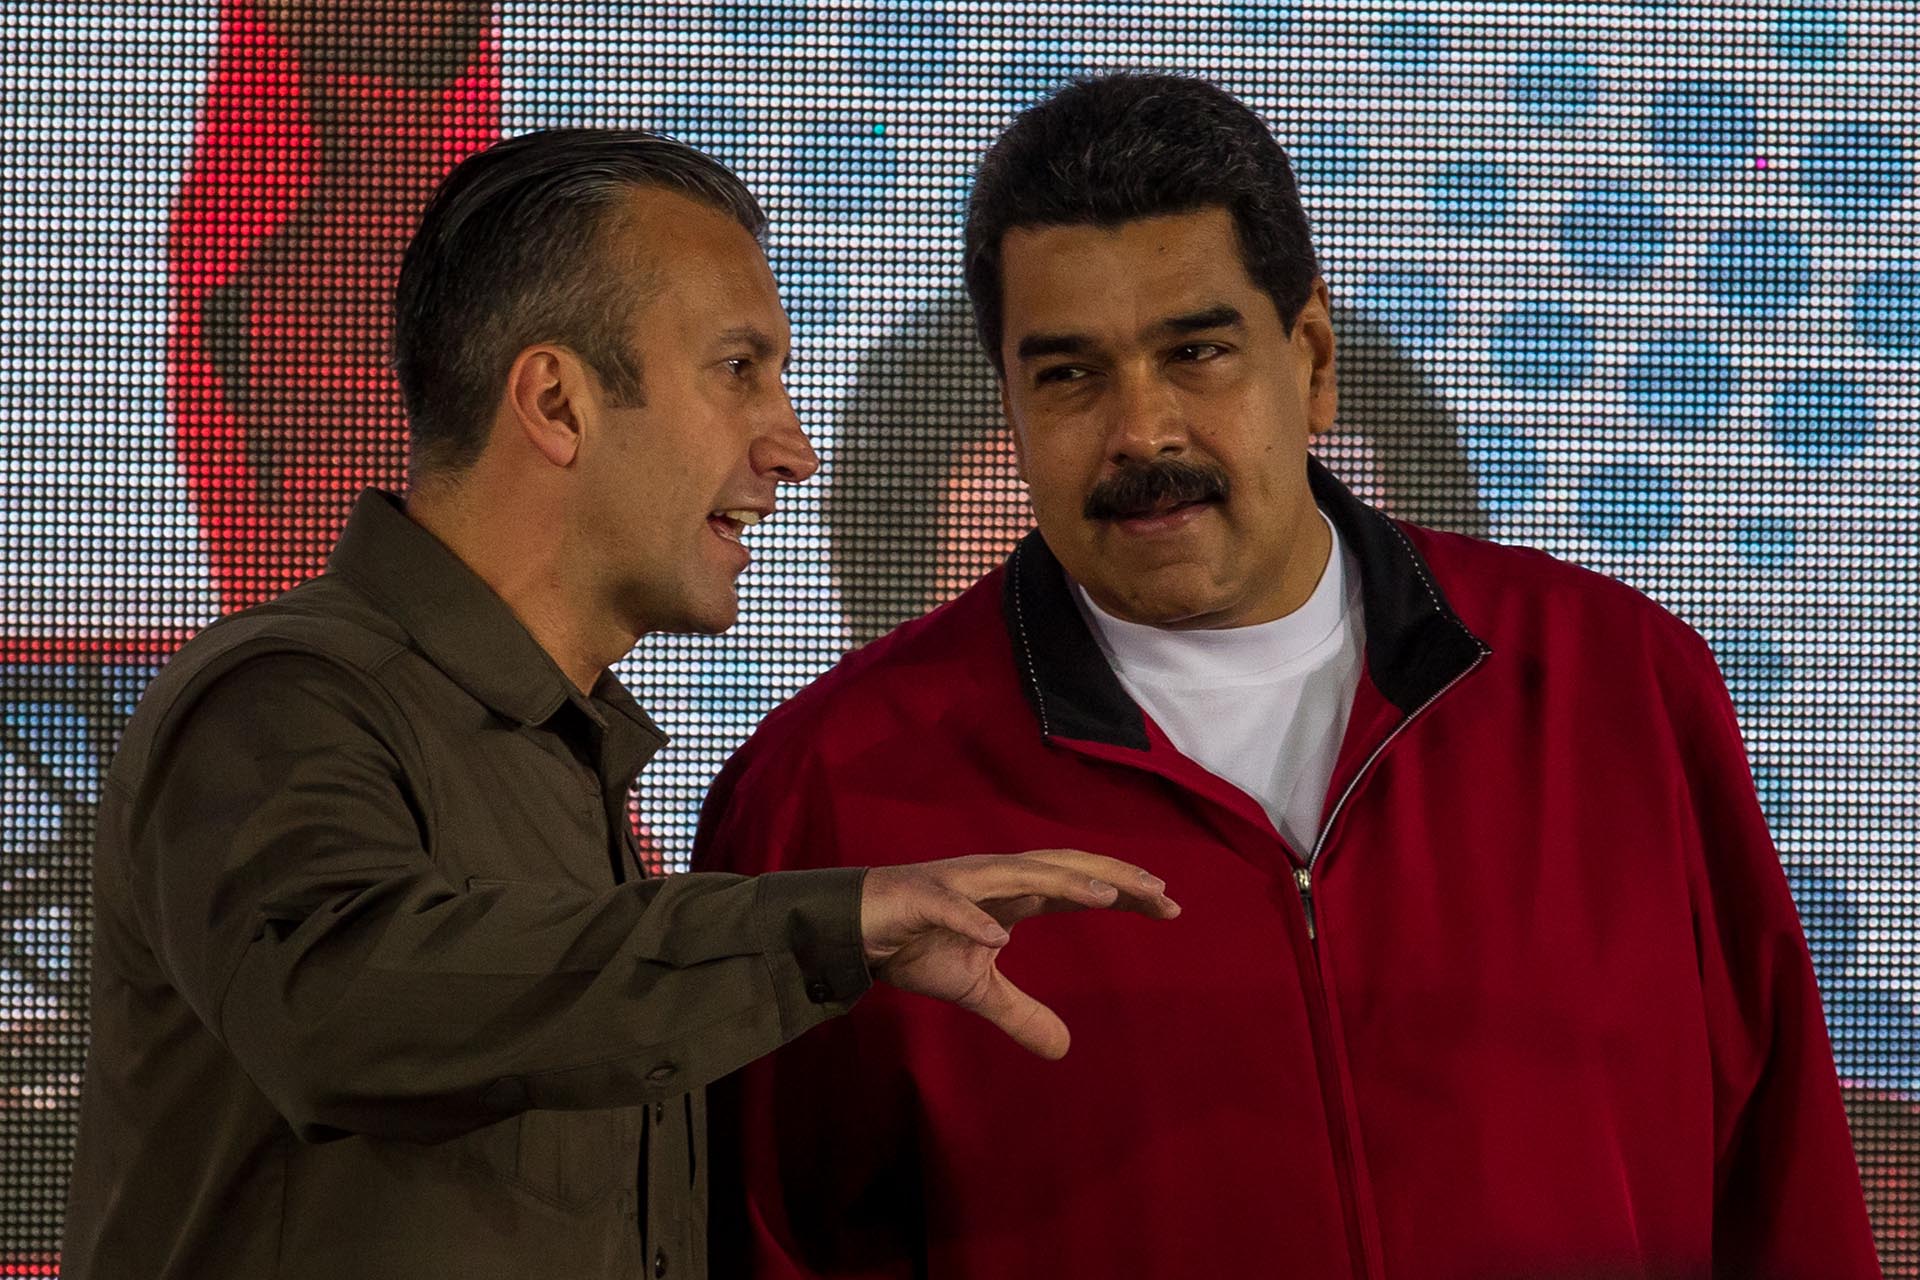 El presidente de Venezuela, Nicolás Maduro, habla con el vicepresidente  económico venezolano, Tareck El Aissami, durante un acto en 2017 en Caracas (EFE/MIGUEL GUTIÉRREZ)